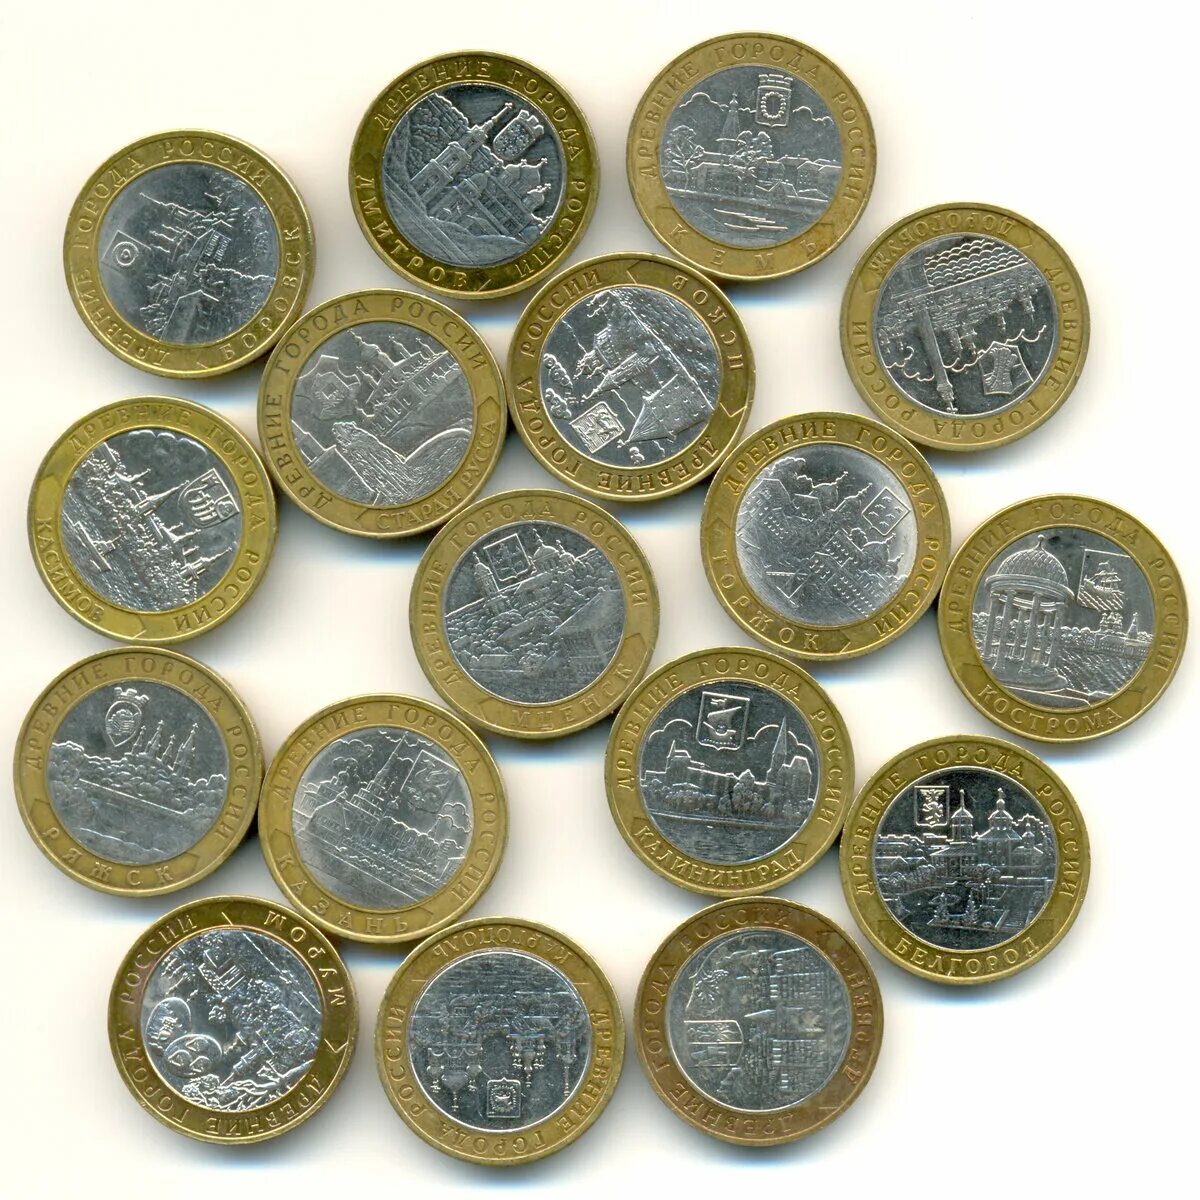 Коллекционные монеты. Юбилейные монеты. Коллекционные 10 рублевые монеты. Коллекционные м Онуты.